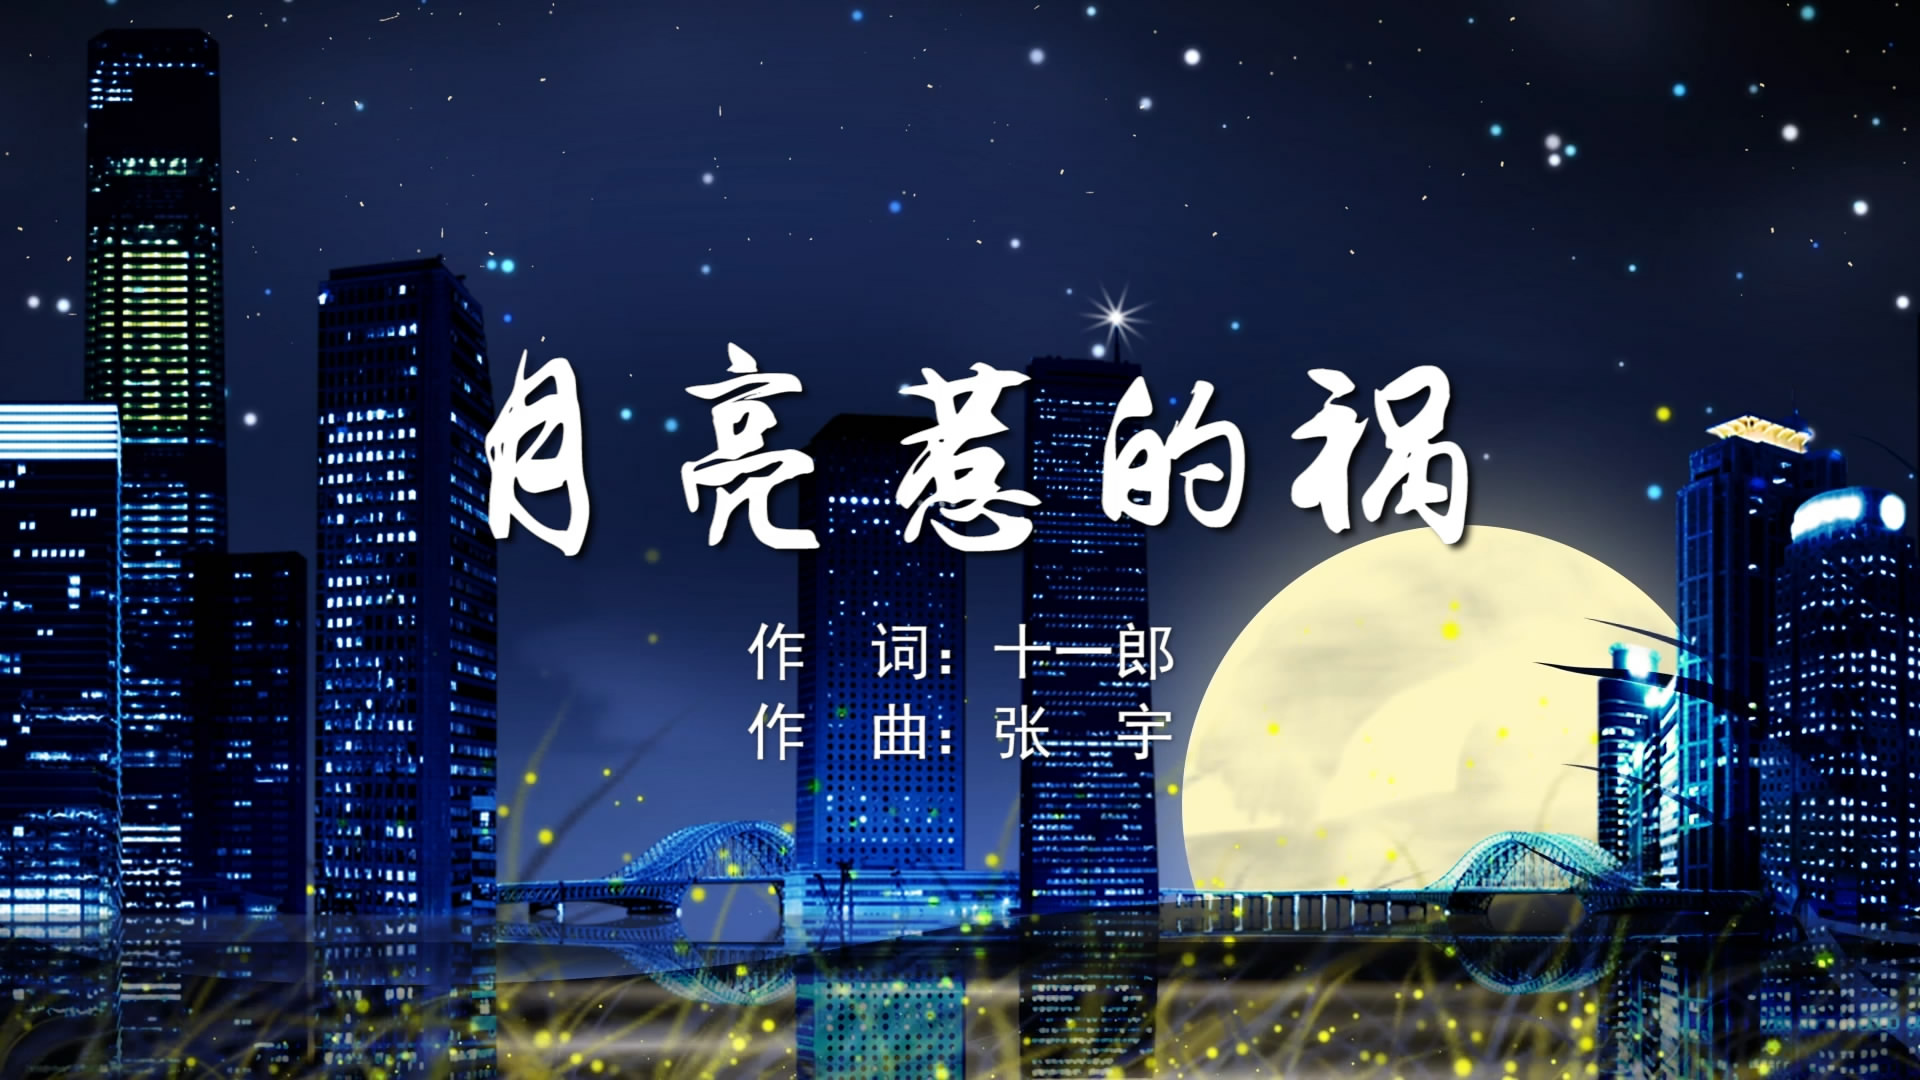 月亮惹的祸 张宇MV字幕配乐伴奏舞台演出LED背景大屏幕视频素材TV